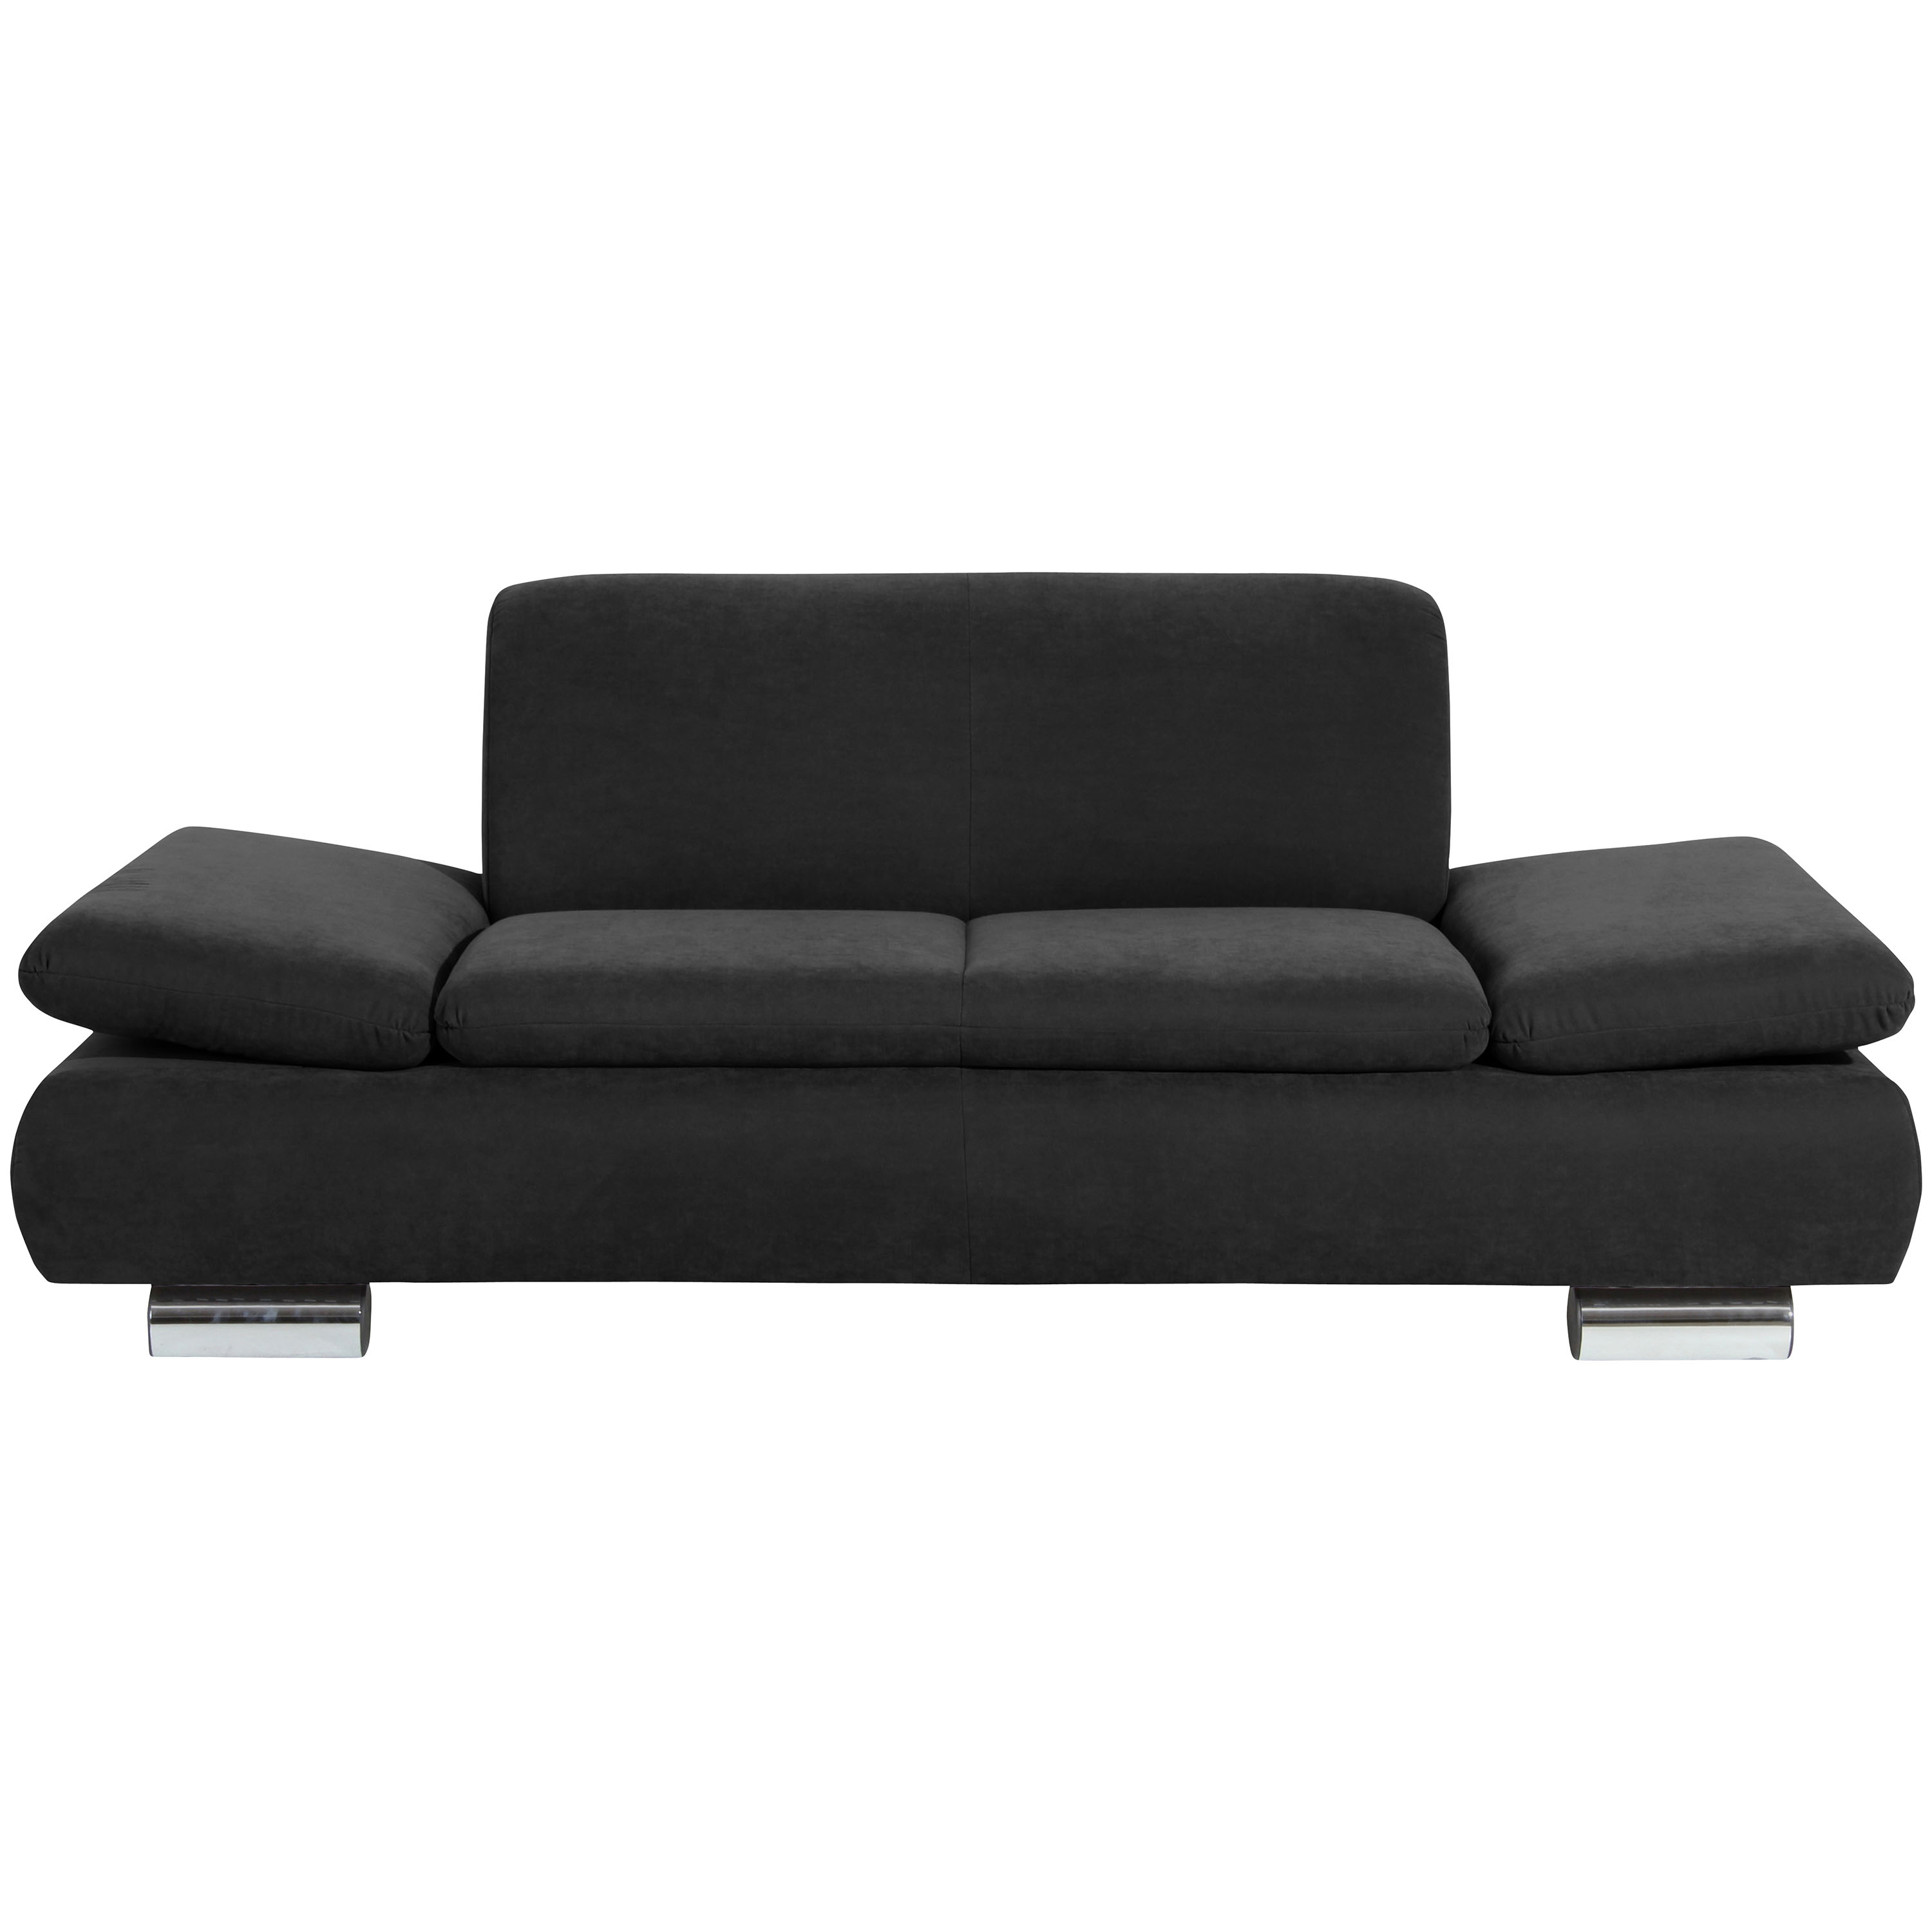 frontansicht von einem schwarzen 2-sitzer sofa mit verchromten metallfüssen